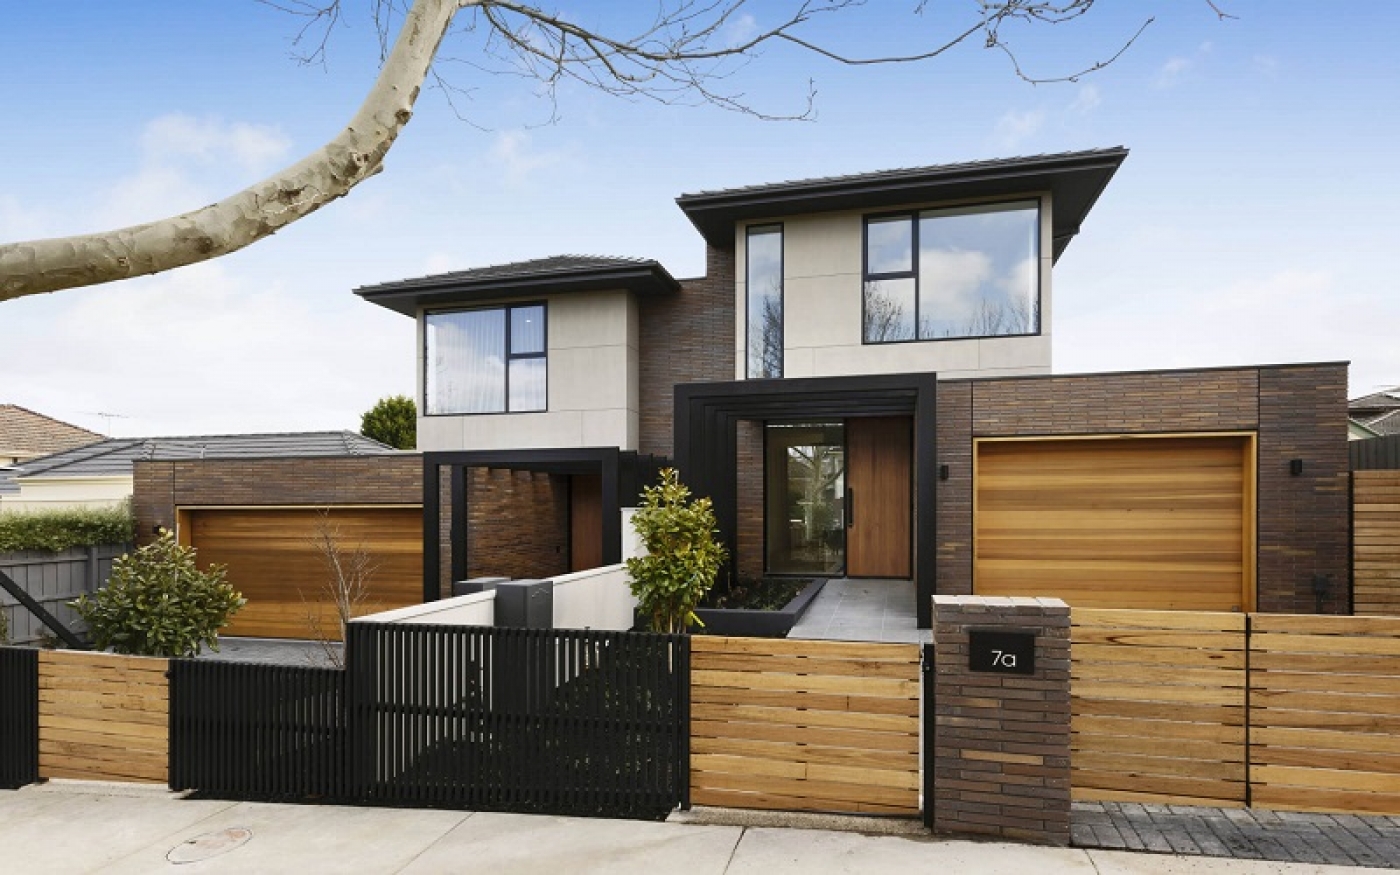 Duplex Home Builders Melbourne - Duplex Home Builders Melbourne